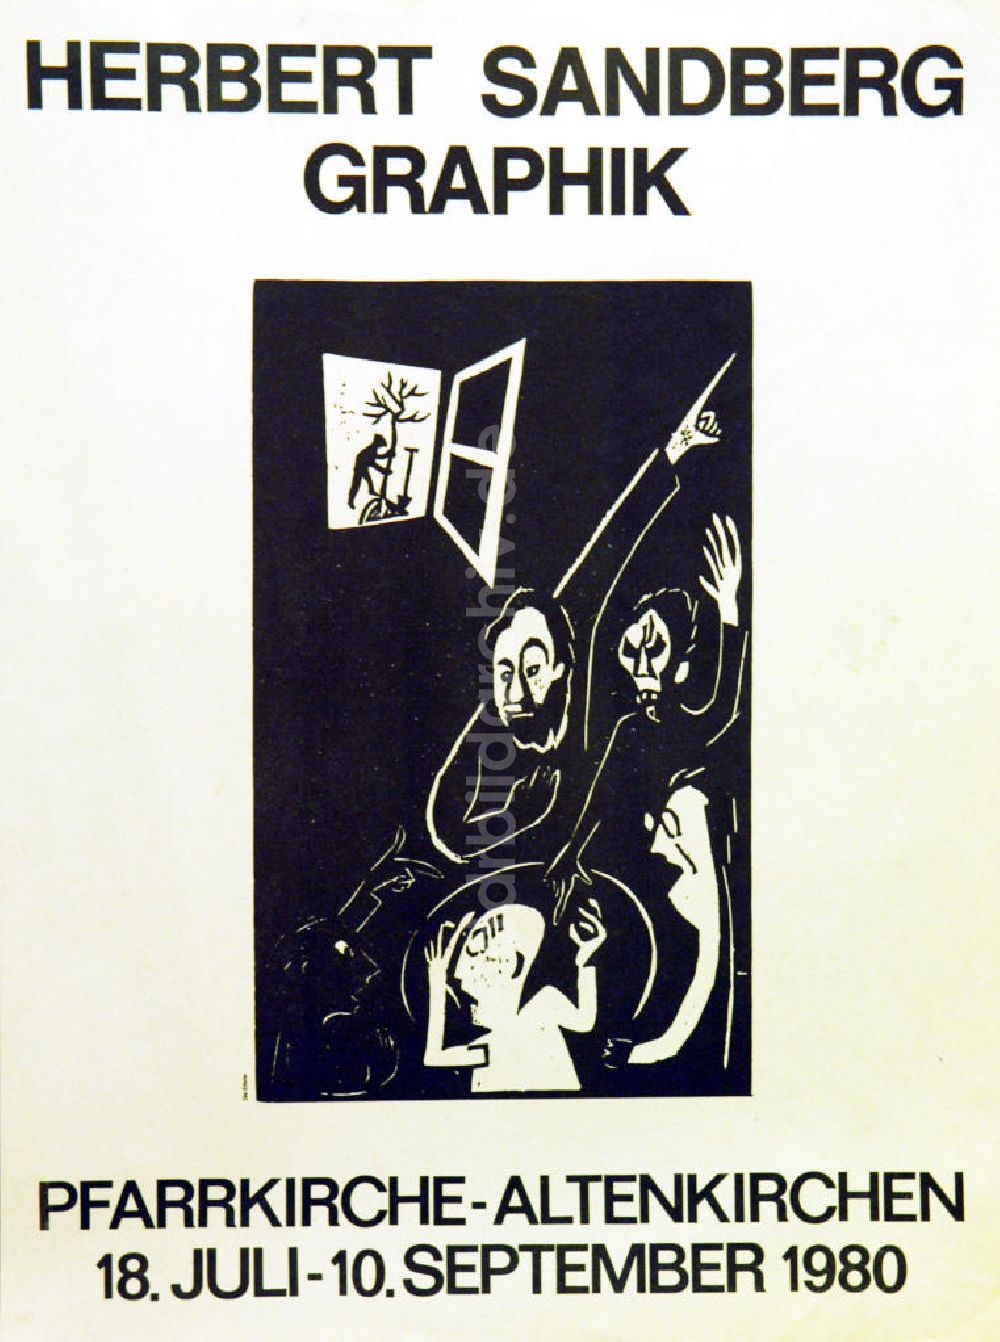 DDR-Fotoarchiv: Berlin - Plakat von der Ausstellung Herbert Sandberg Graphik aus dem Jahr 1980